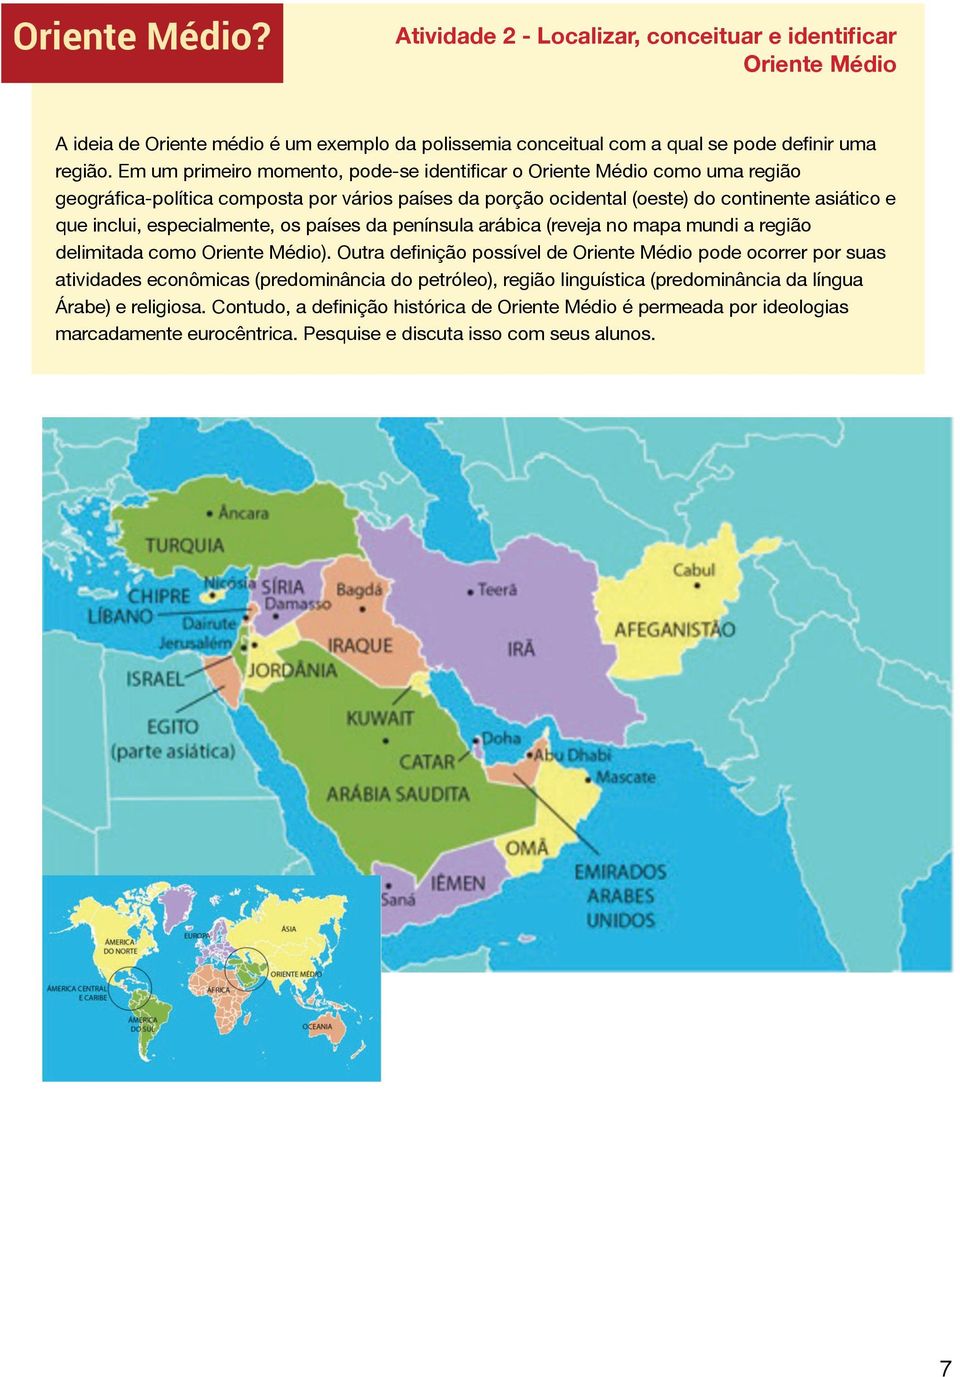 especialmente, os países da península arábica (reveja no mapa mundi a região delimitada como Oriente Médio).